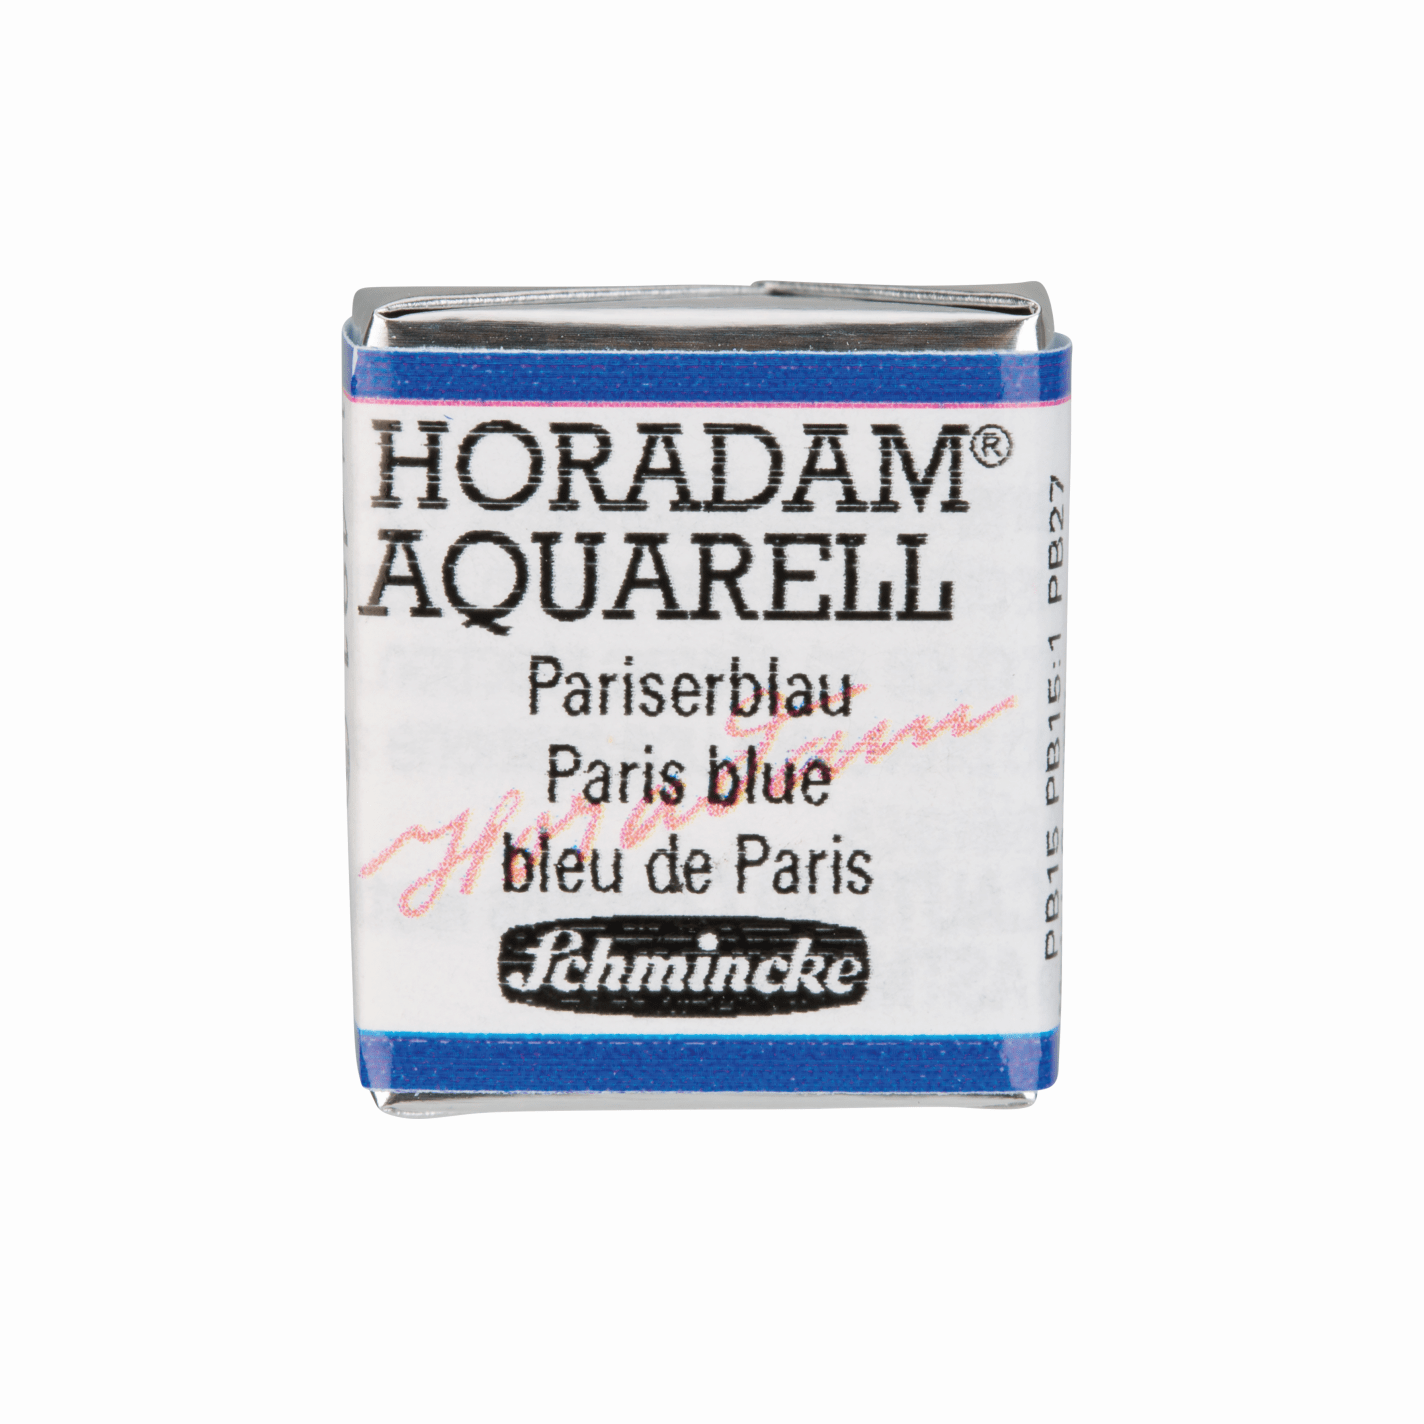 Schmincke Horadam Aquarell pans 1/2 pan Paris Blue